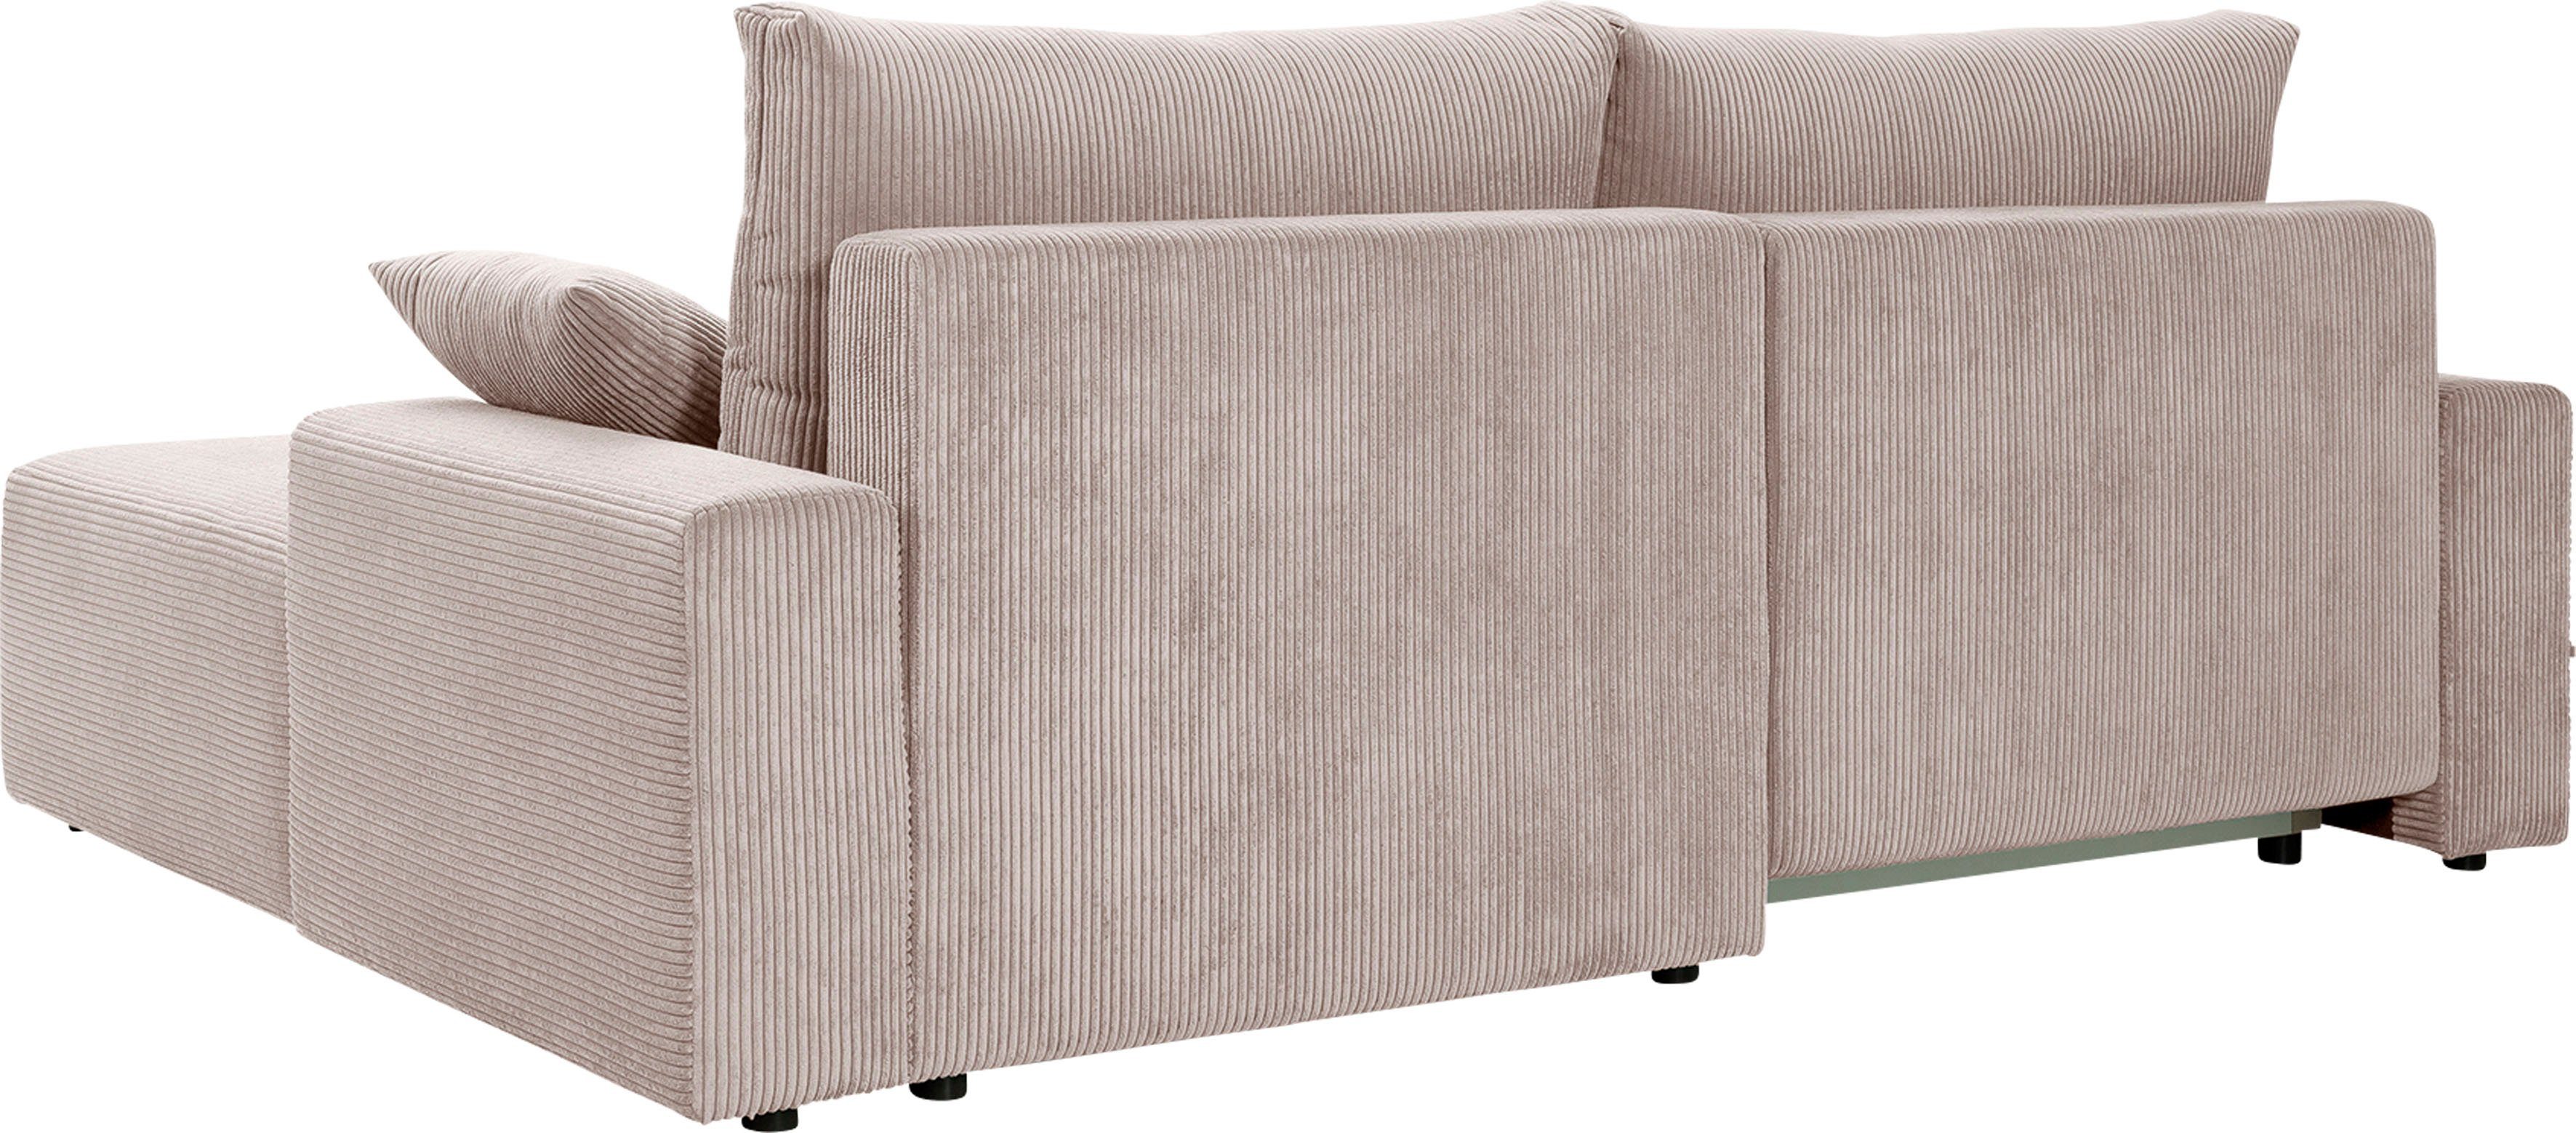 exxpo - sofa fashion Ecksofa in Bettfunktion Orinoko, Cord-Farben Bettkasten biege inklusive verschiedenen und